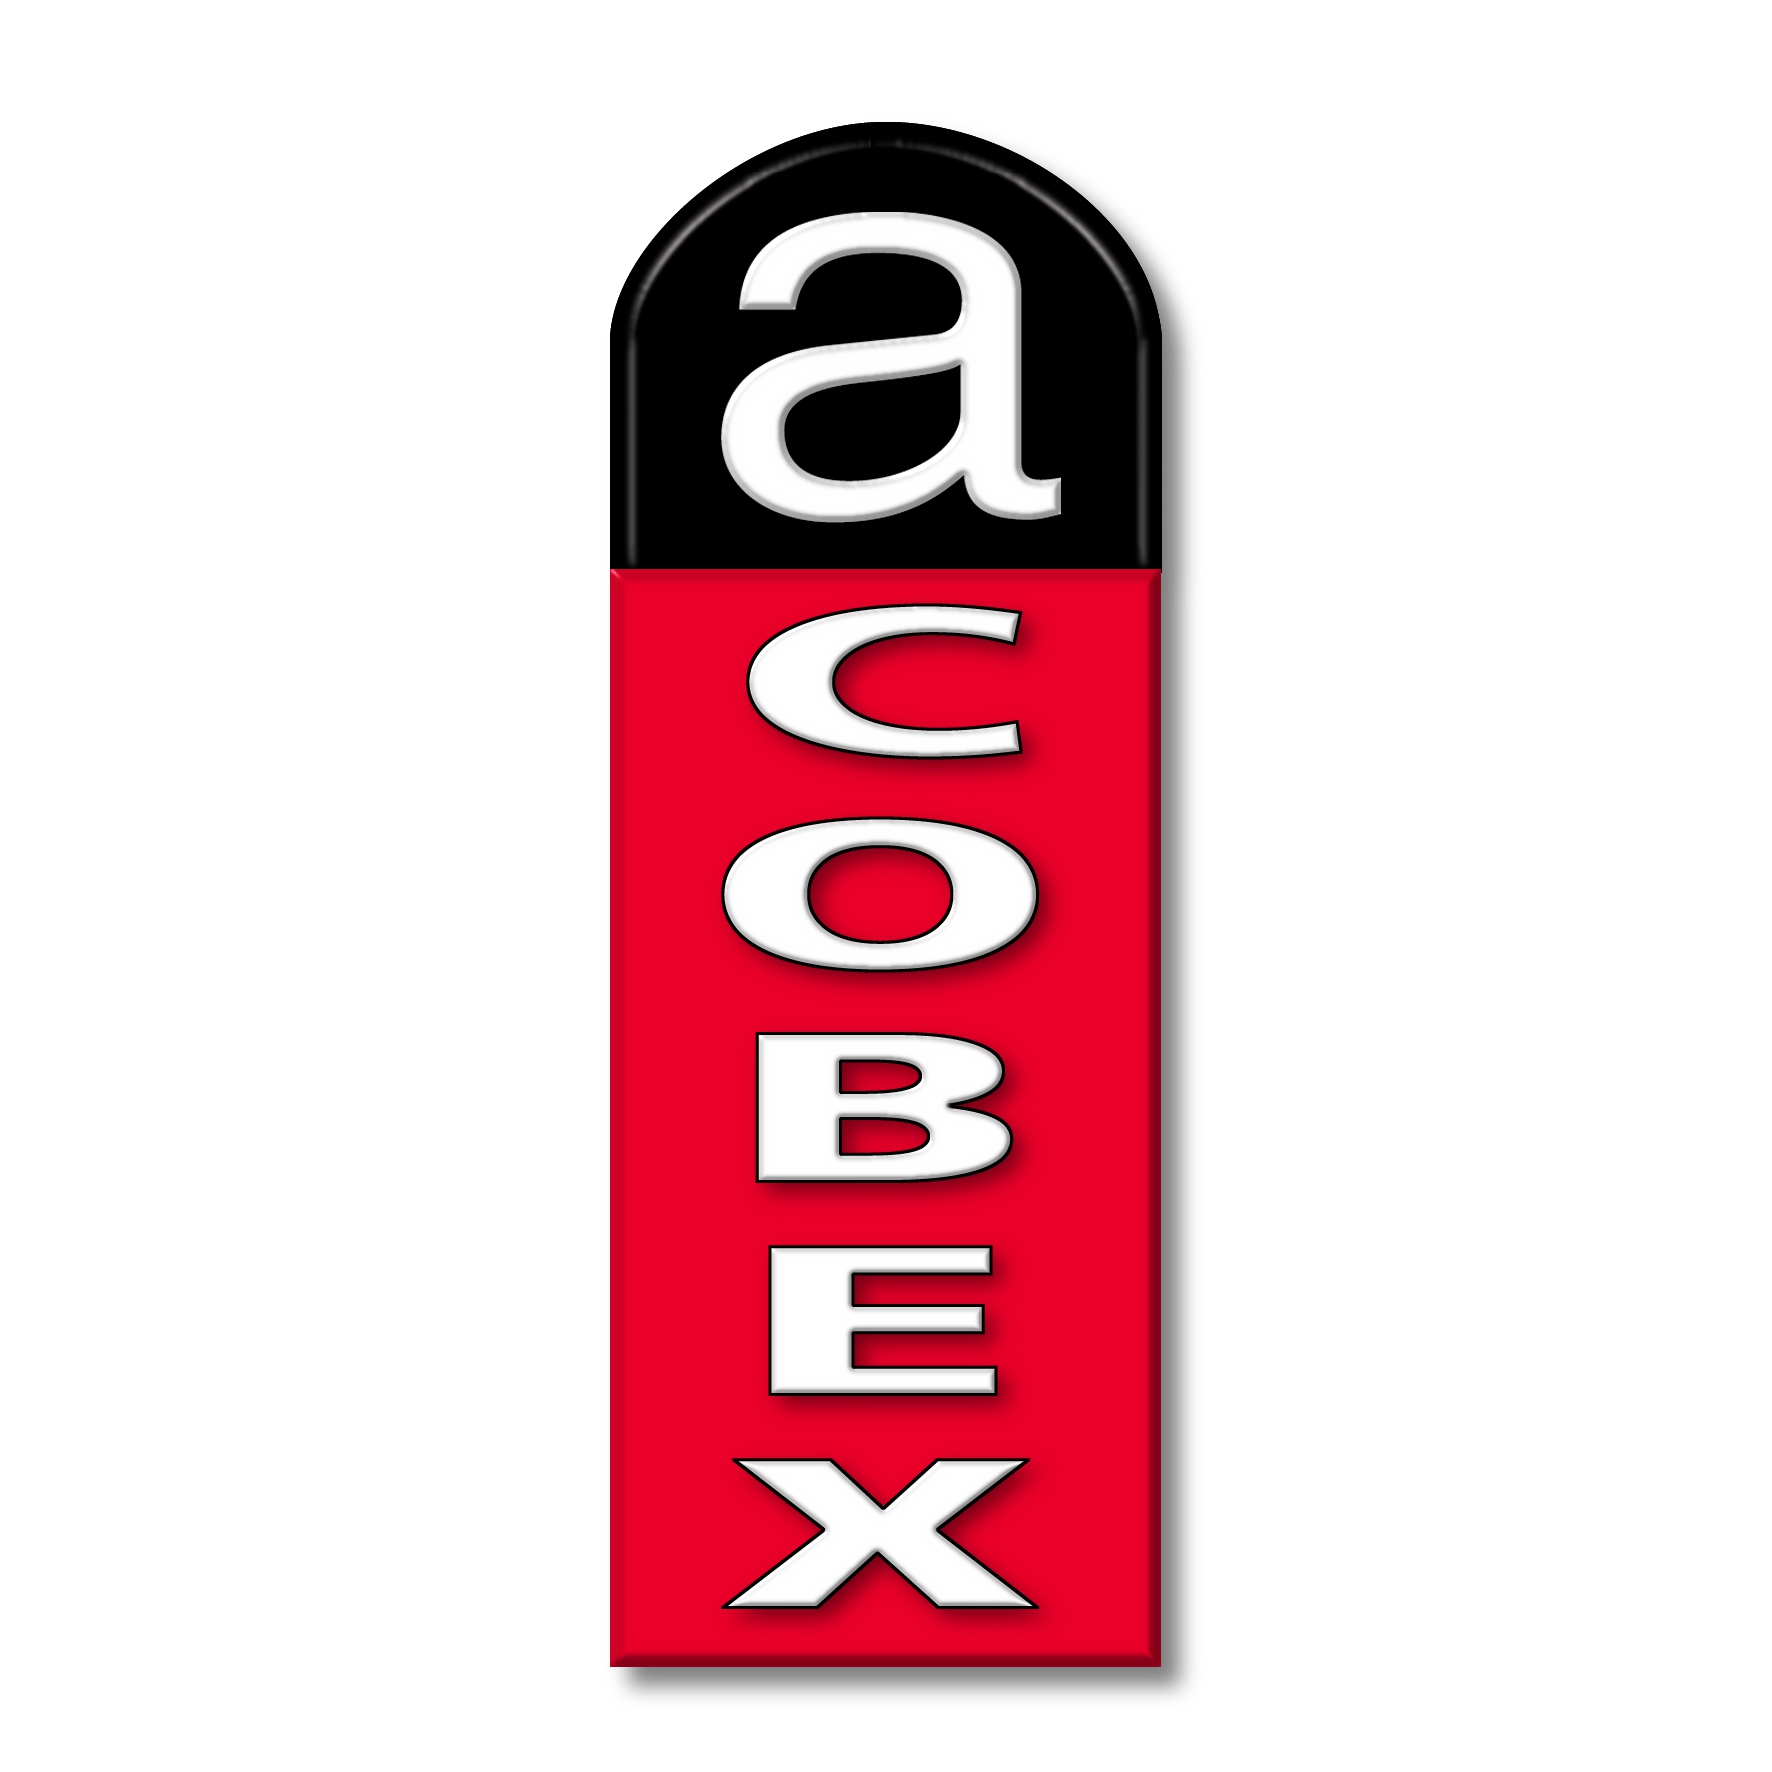 ACOBEX